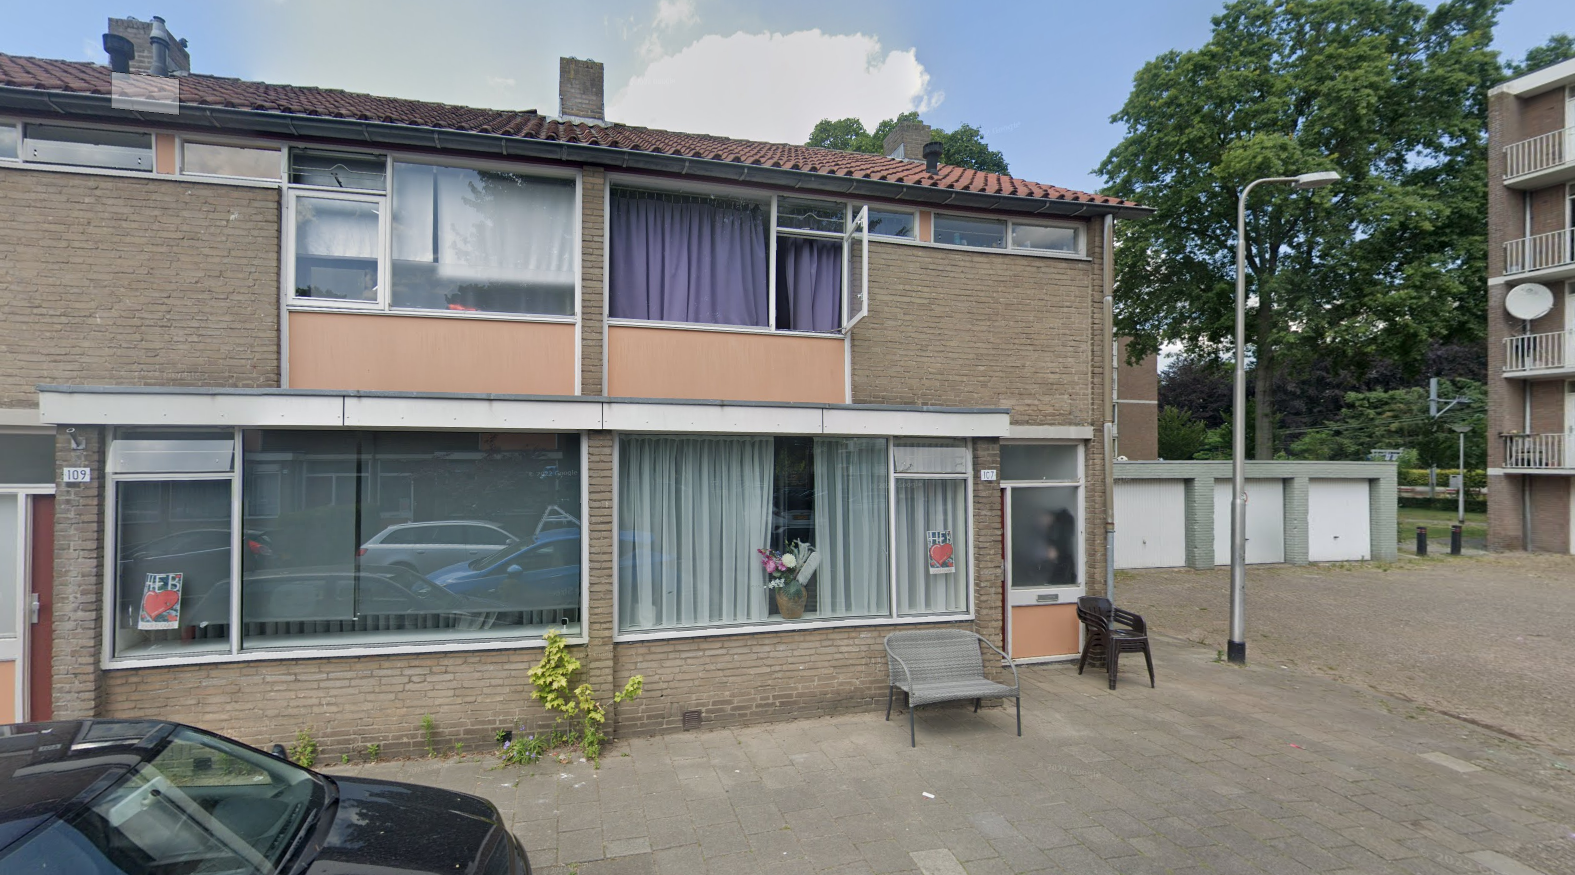 Martinitorenstraat 107, 5037 AV Tilburg, Nederland